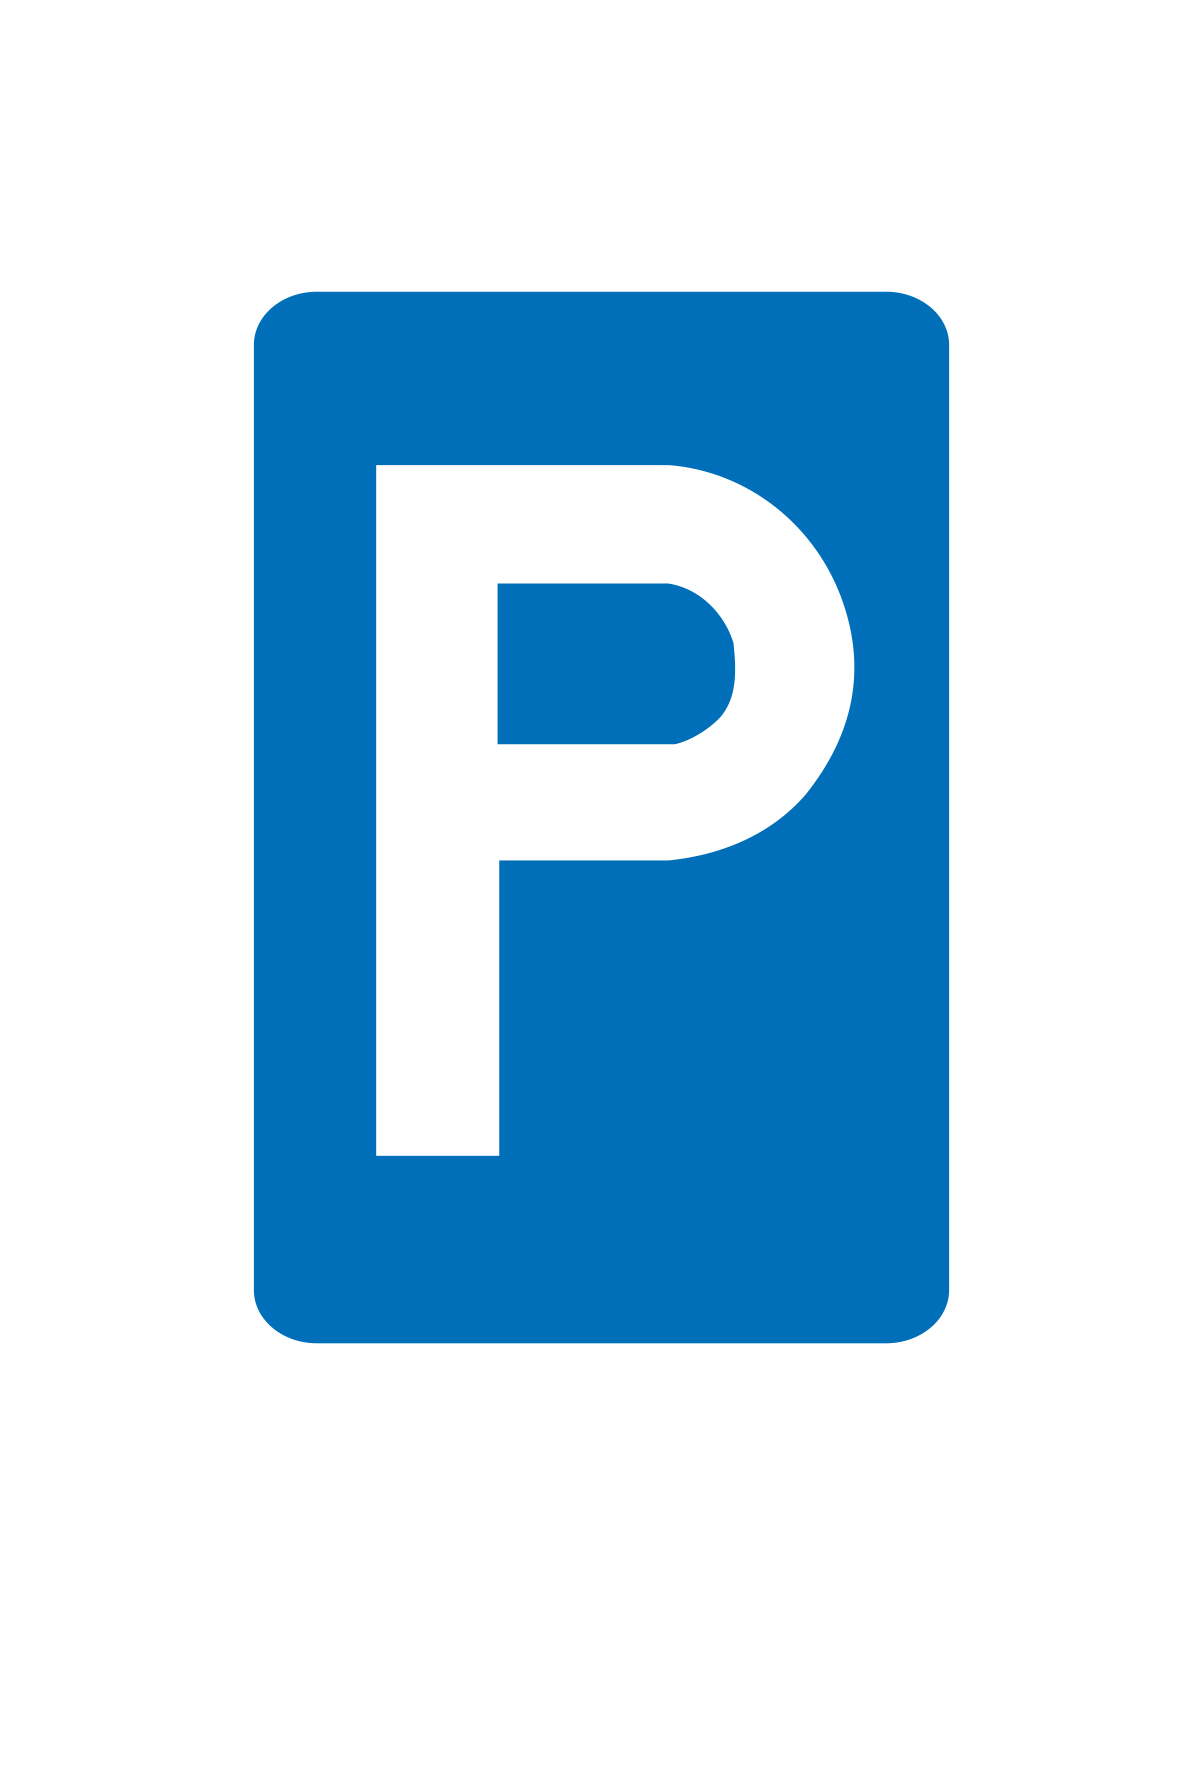 E9A parkeren is toegelaten